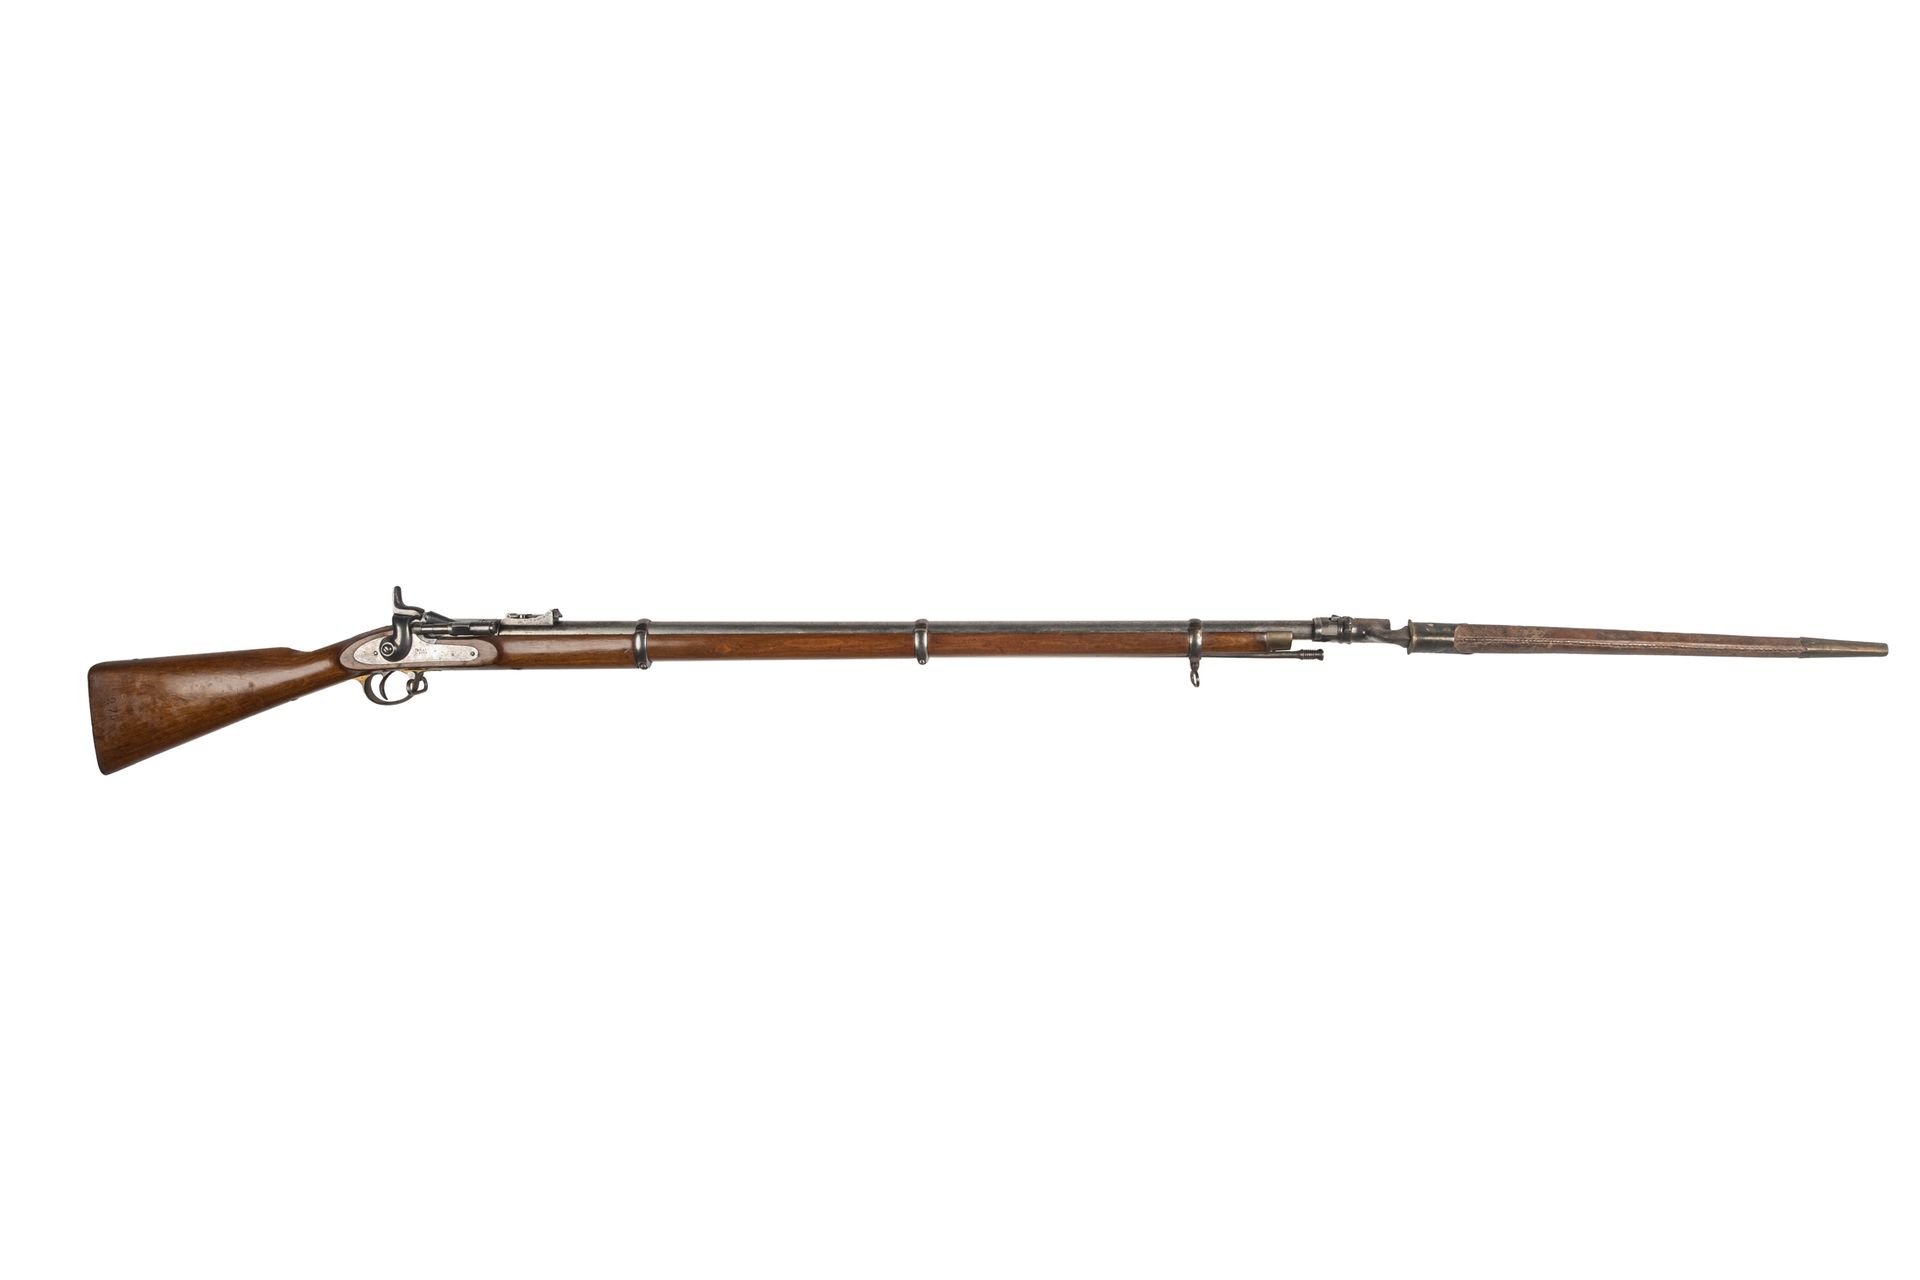 Null Rifle Snider con tabaquera modelo 1867 de fabricación BSA. 

Cañón redondo &hellip;